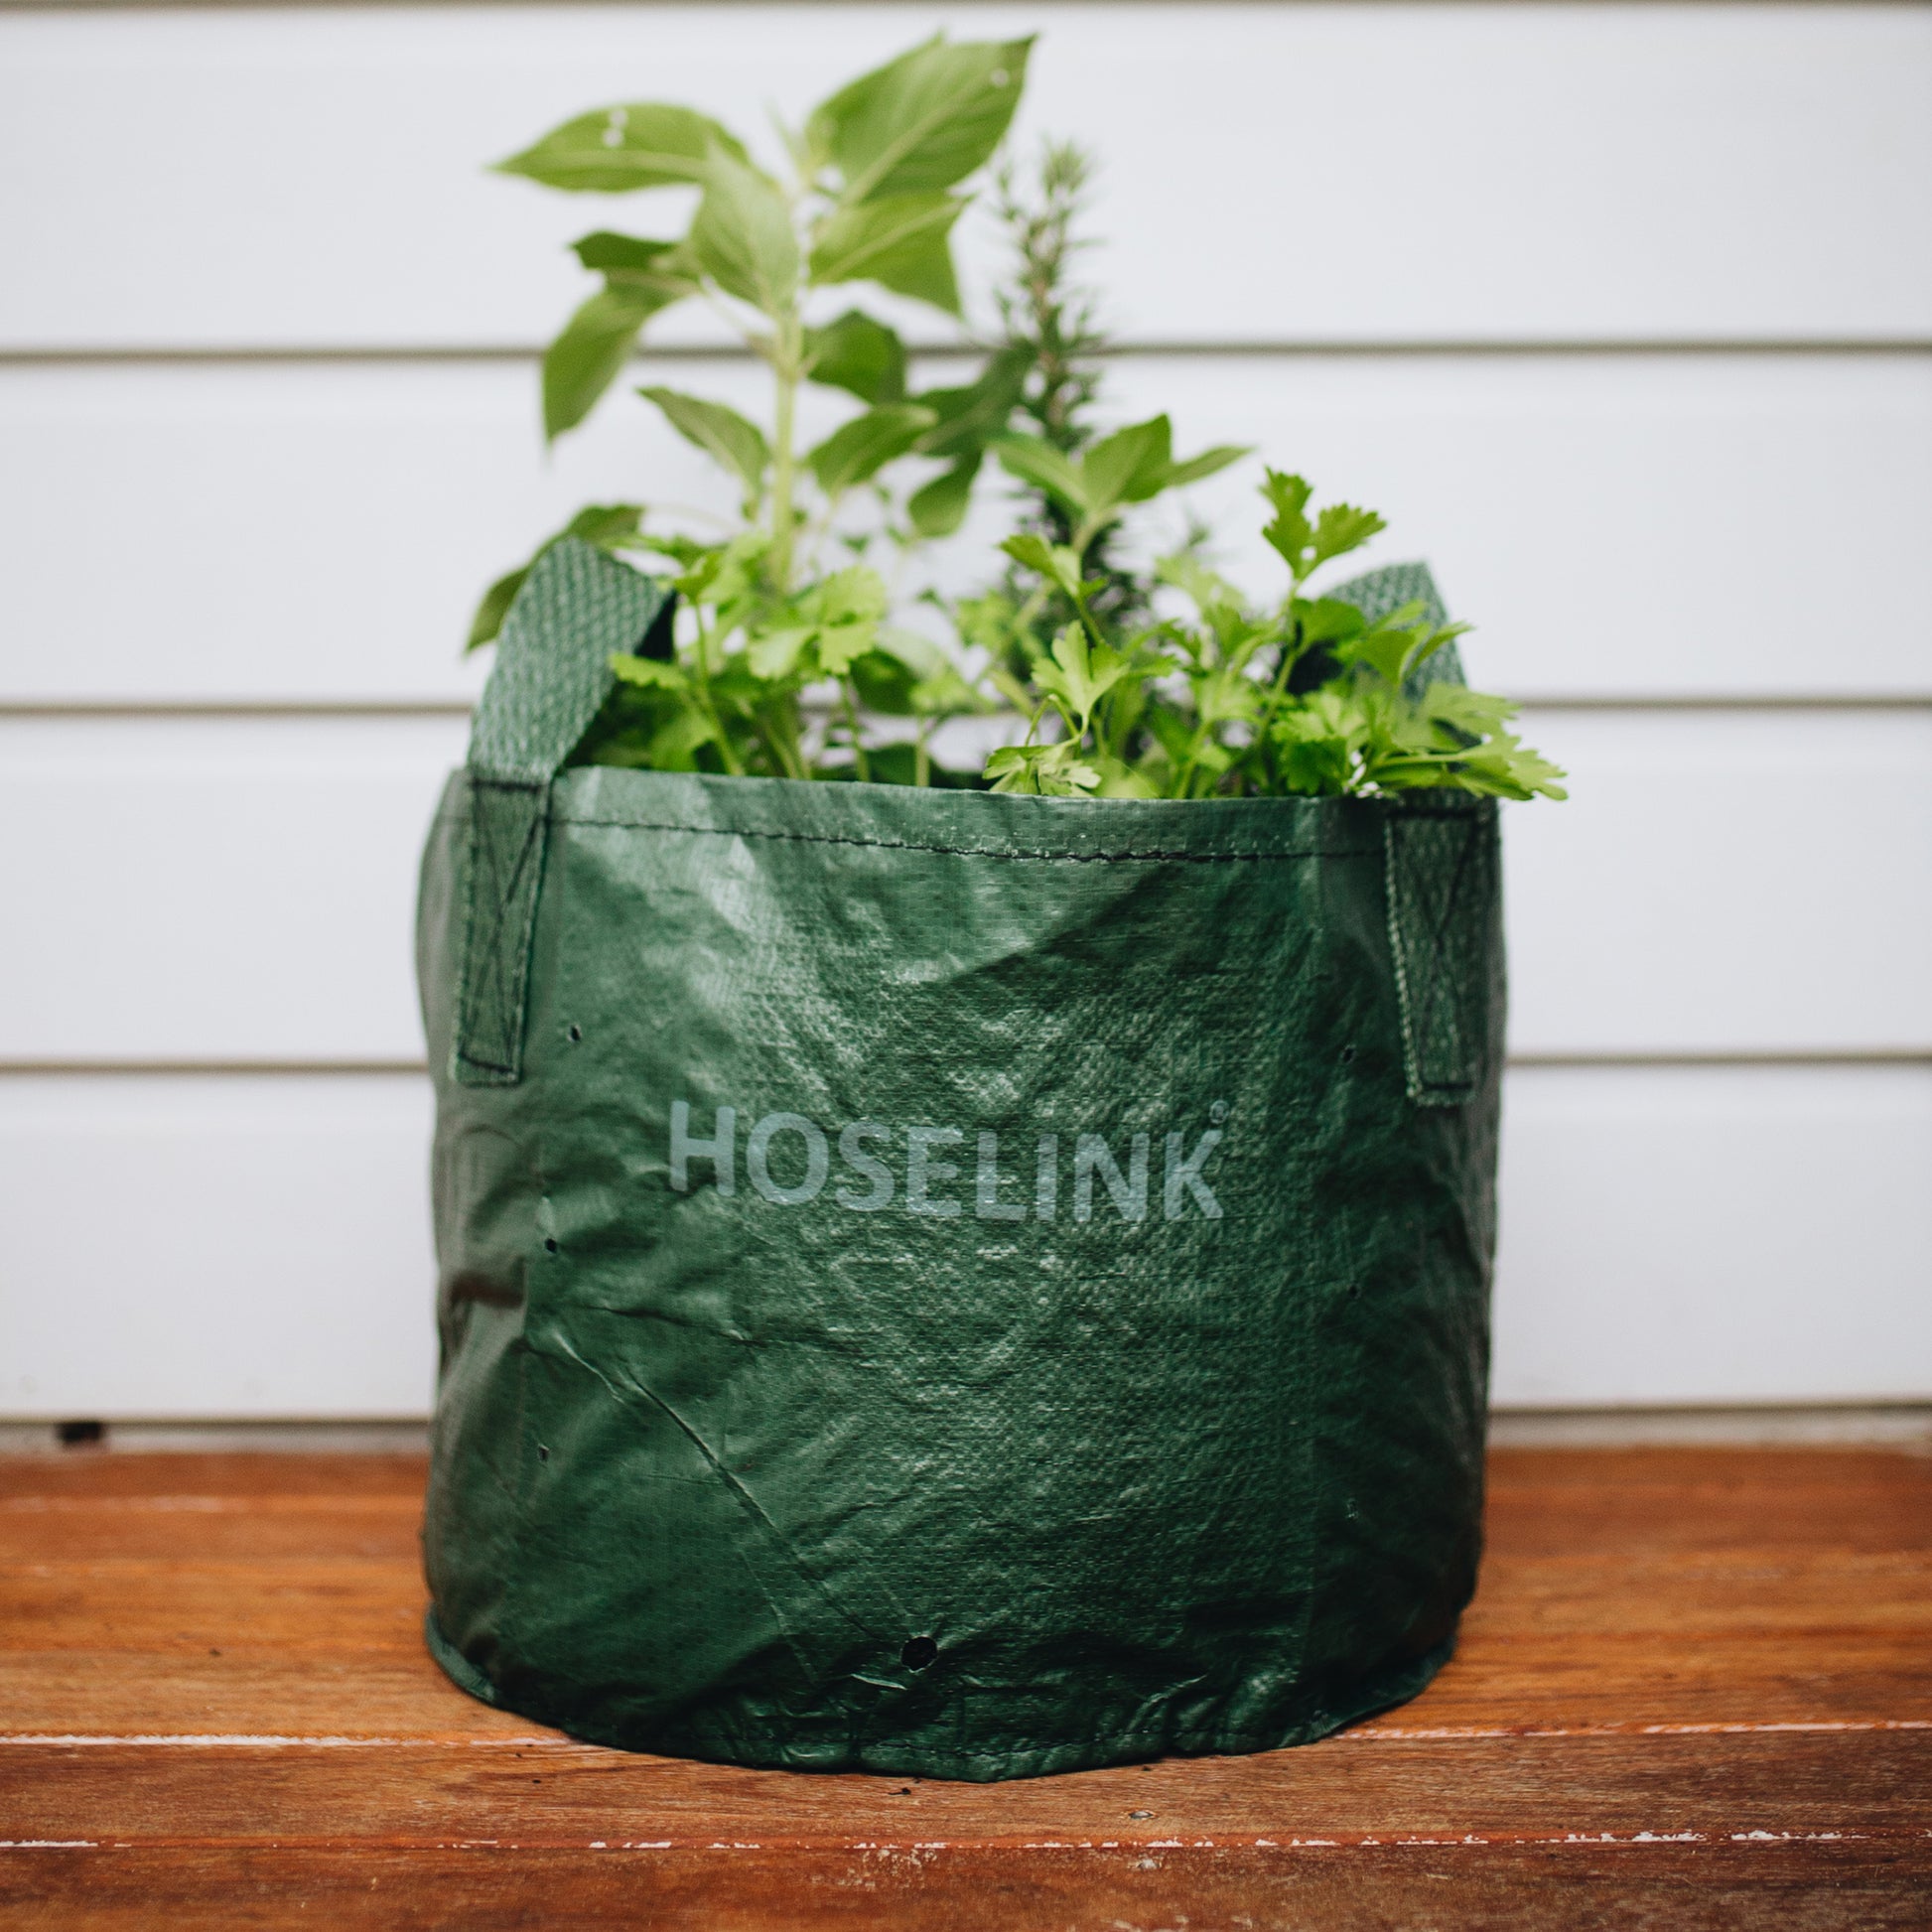 Vegetable Growing Bag - 3 Pack, Tulip World